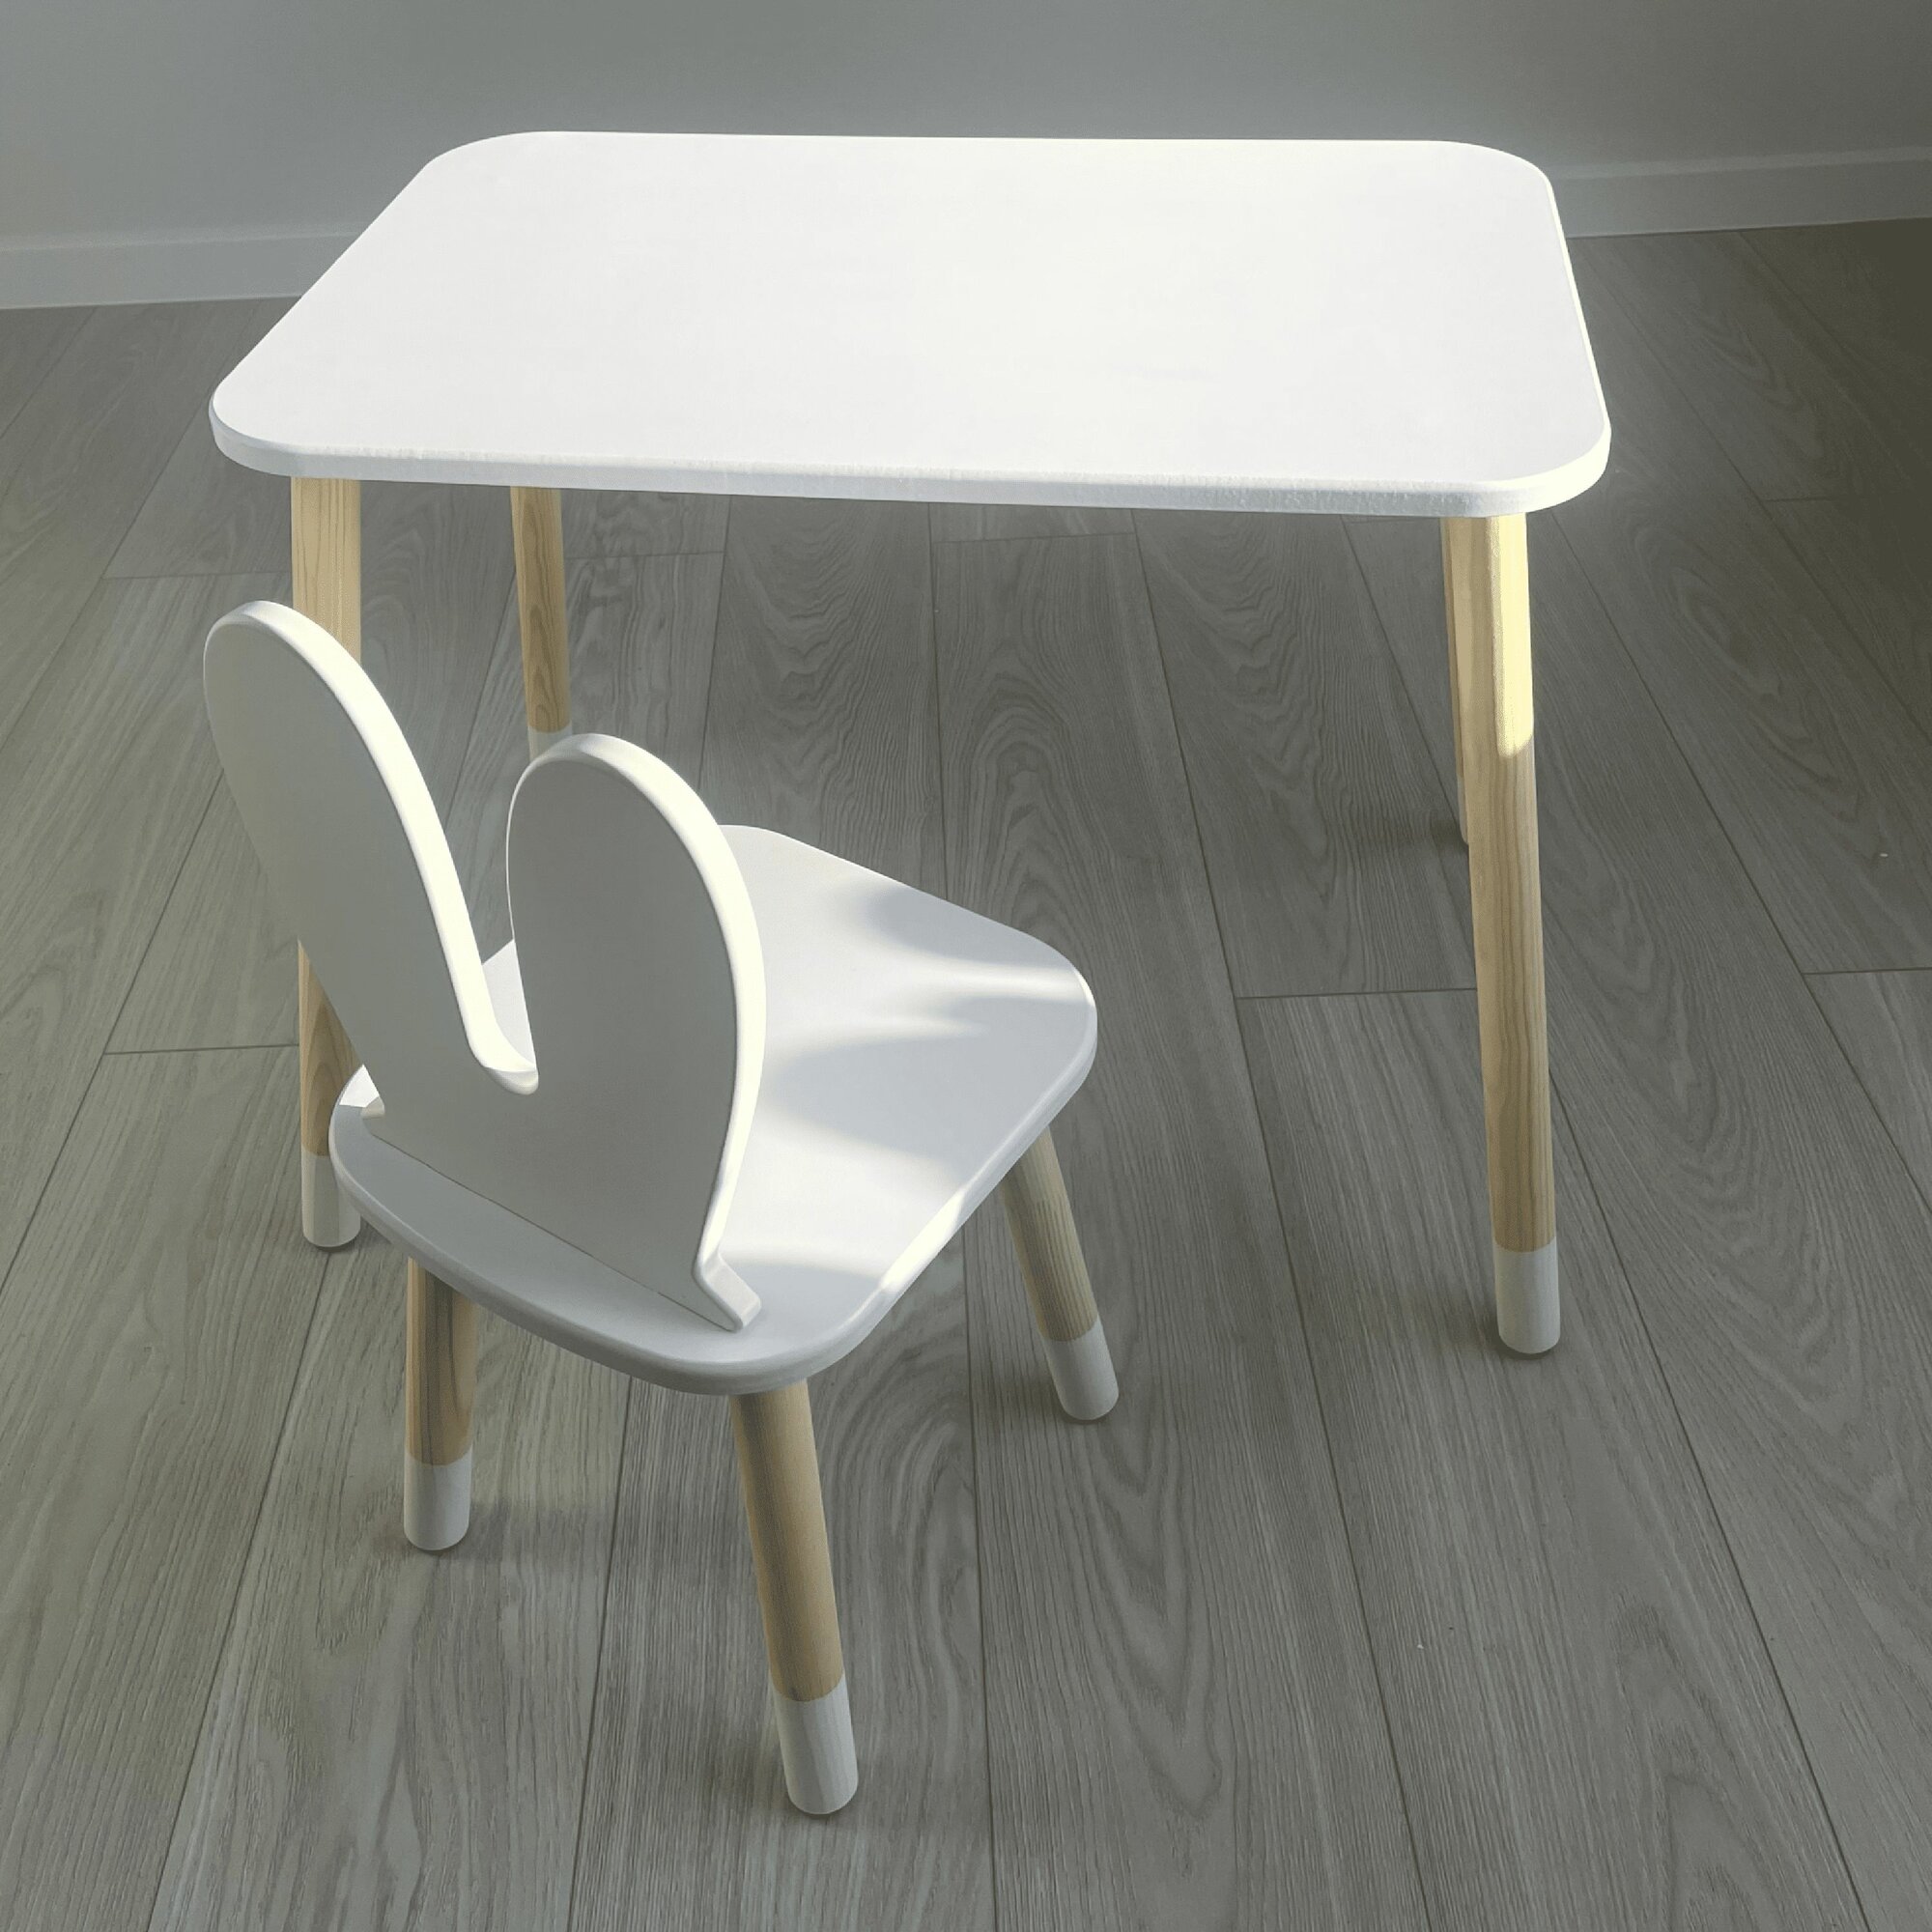 Детский стол прямоугольный белый и стул зайка белый